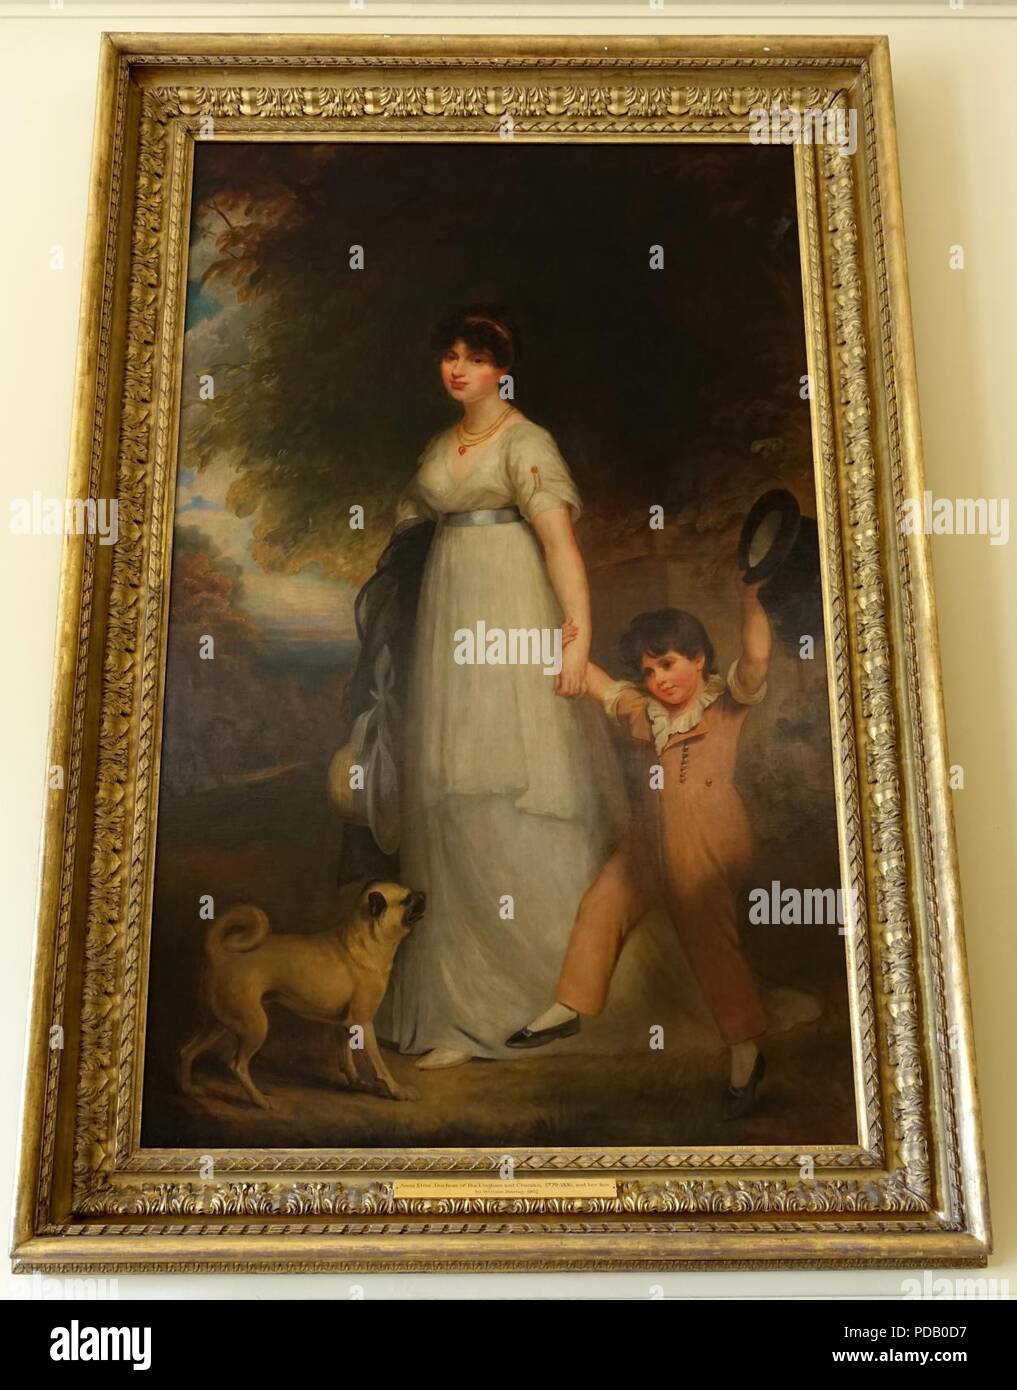 Anna Eliza, duchesse de Buckingham et Chandos, et son fils, par Sir William Beachey, 1802, huile sur toile - Stowe House - Buckinghamshire, Angleterre - Banque D'Images